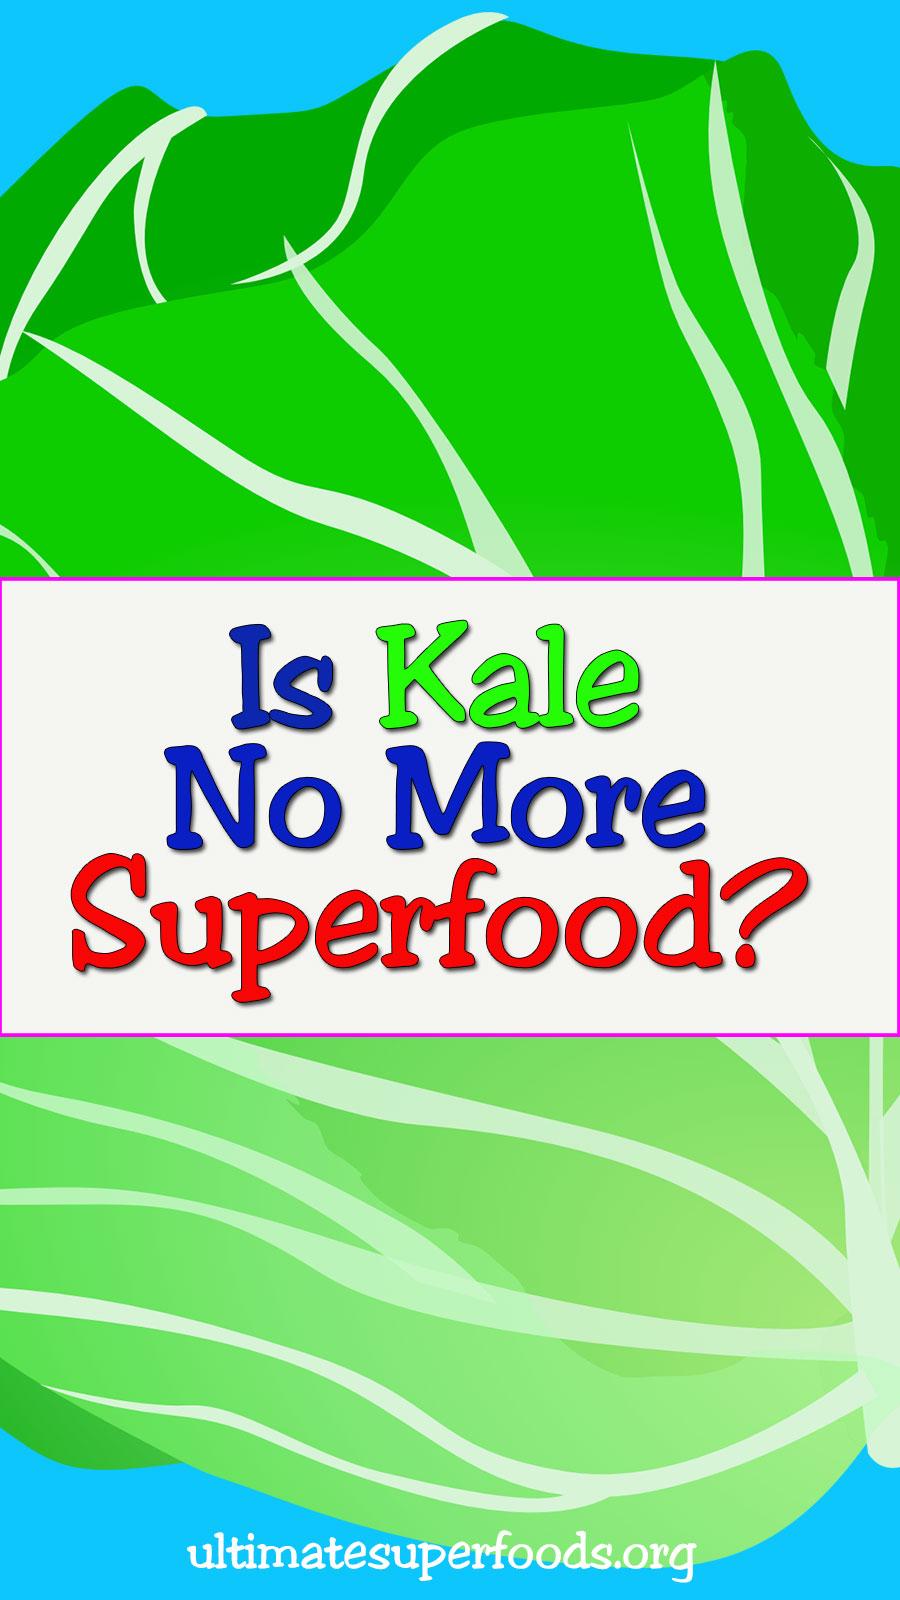 kale-superfood